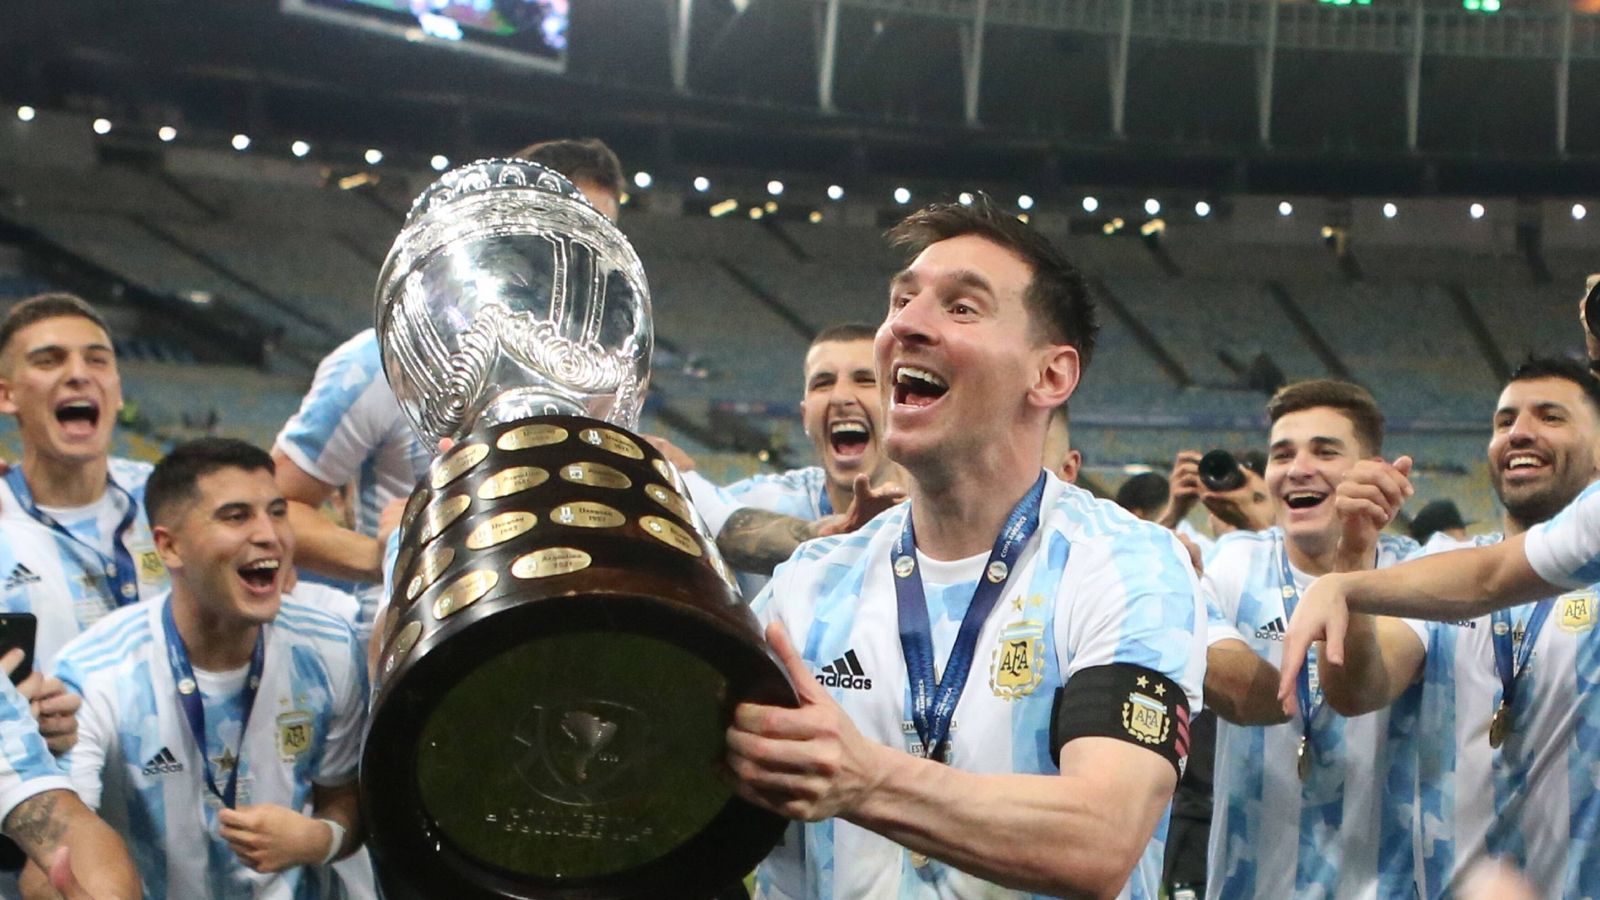 
                <strong>2021: Copa-America-Sieger – Kontinentales Maximum </strong><br>
                Mit Argentinien krönt sich Messi 2020/21 zum Copa-America-Sieger. Mit vier Treffern in sieben Spielen führt der Kapitän die "Albiceleste" bis ins Finale gegen Brasilien, das die Gauchos mit 1:0 gewinnen.
              